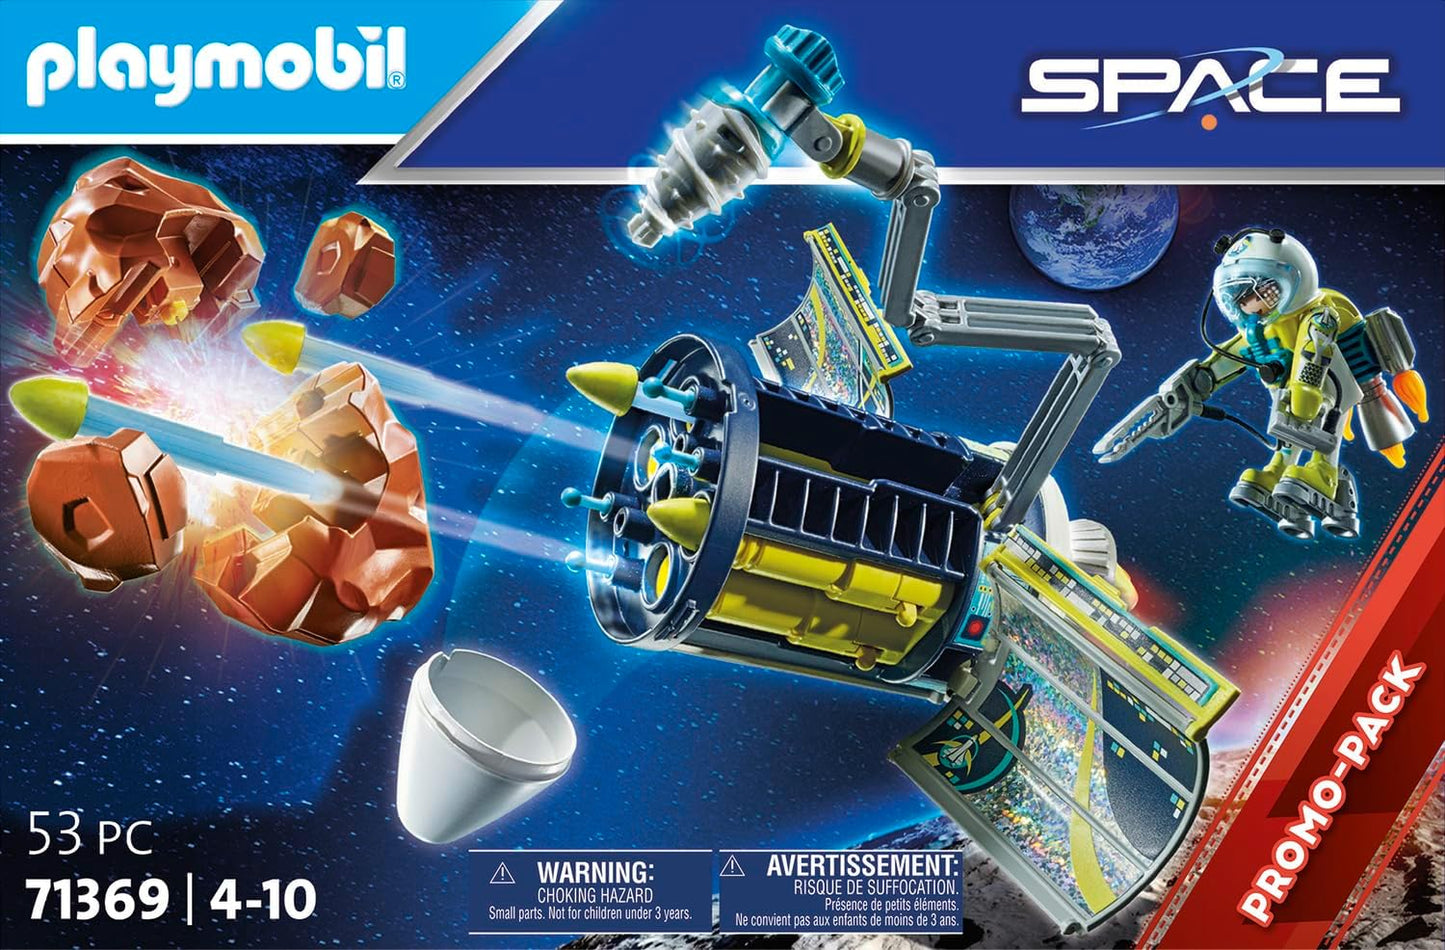 Playmobil Pacote promocional 71369 Space Meteoroid Destroyer, missão no espaço sideral, dramatização divertida e imaginativa, conjunto de jogos adequado para crianças de 4 anos ou mais